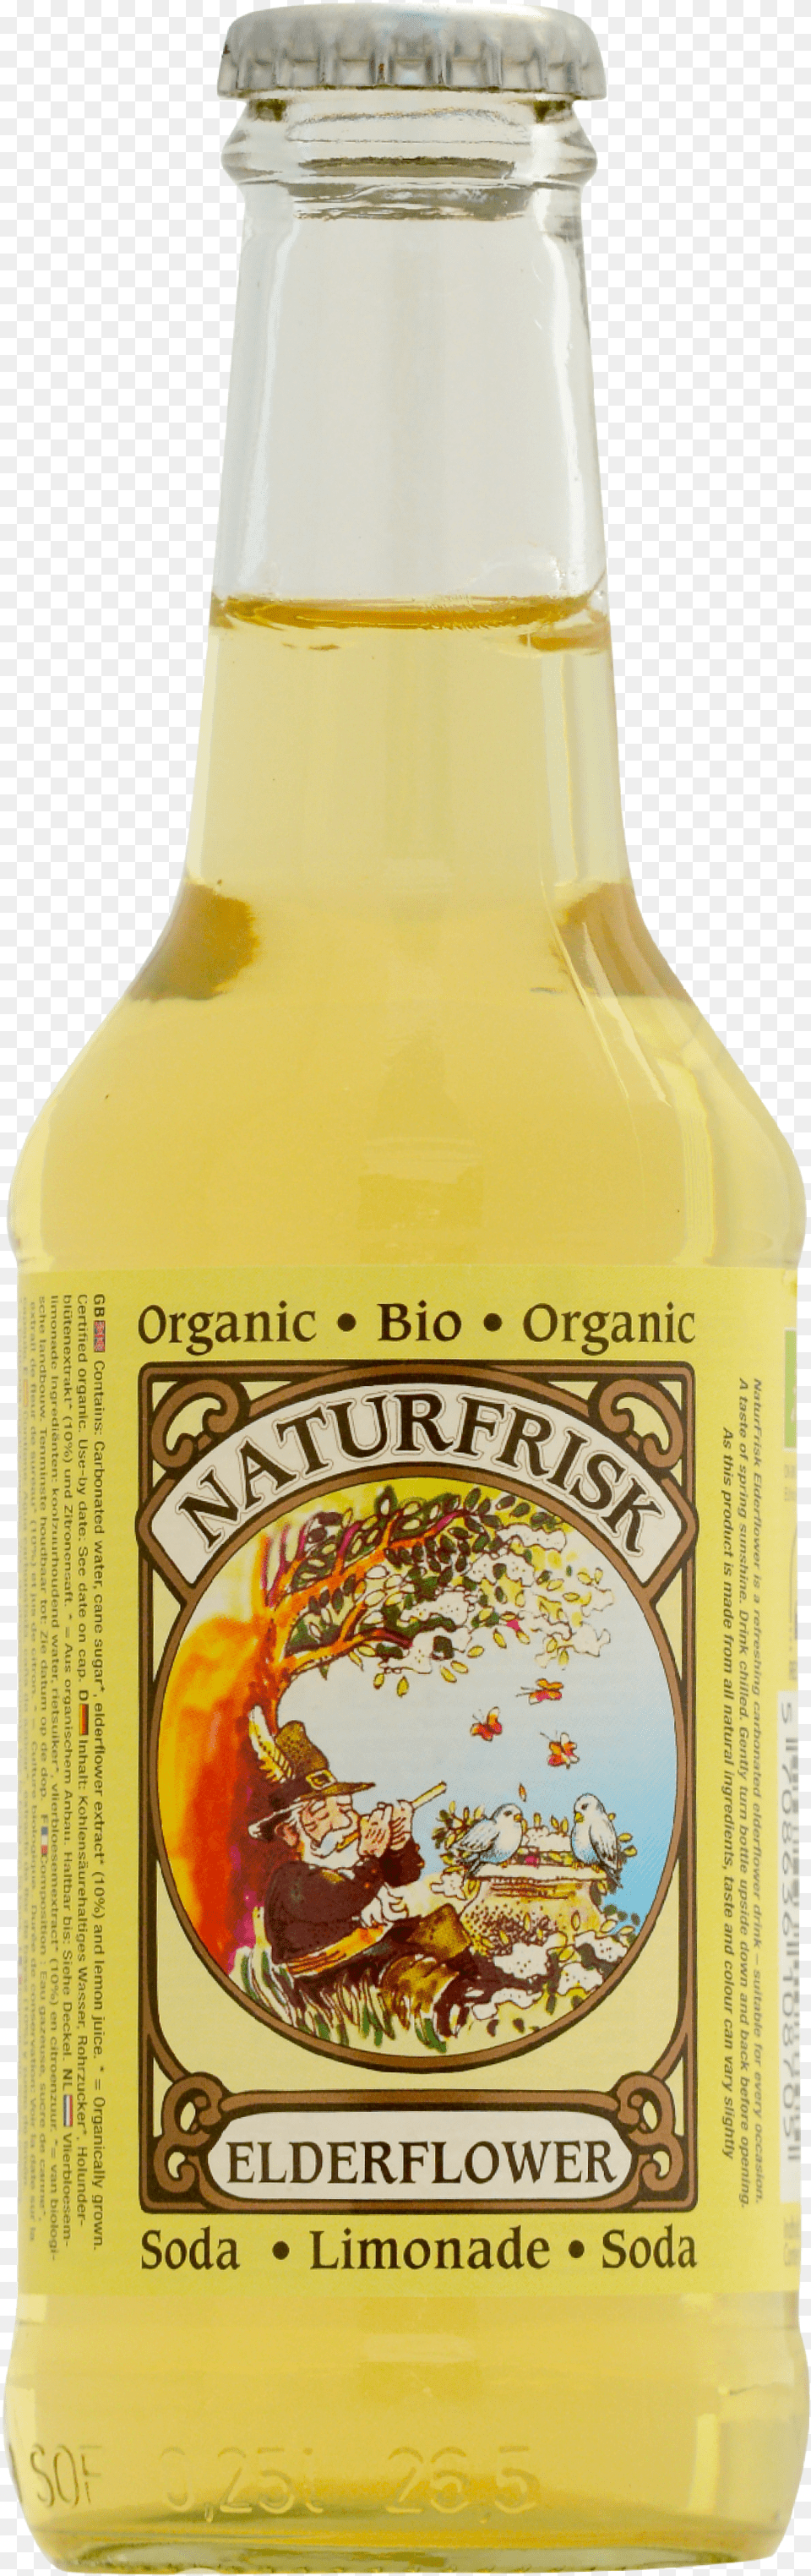 Naturfrisk Elderflower Soda Drink Soft Drink Png Image